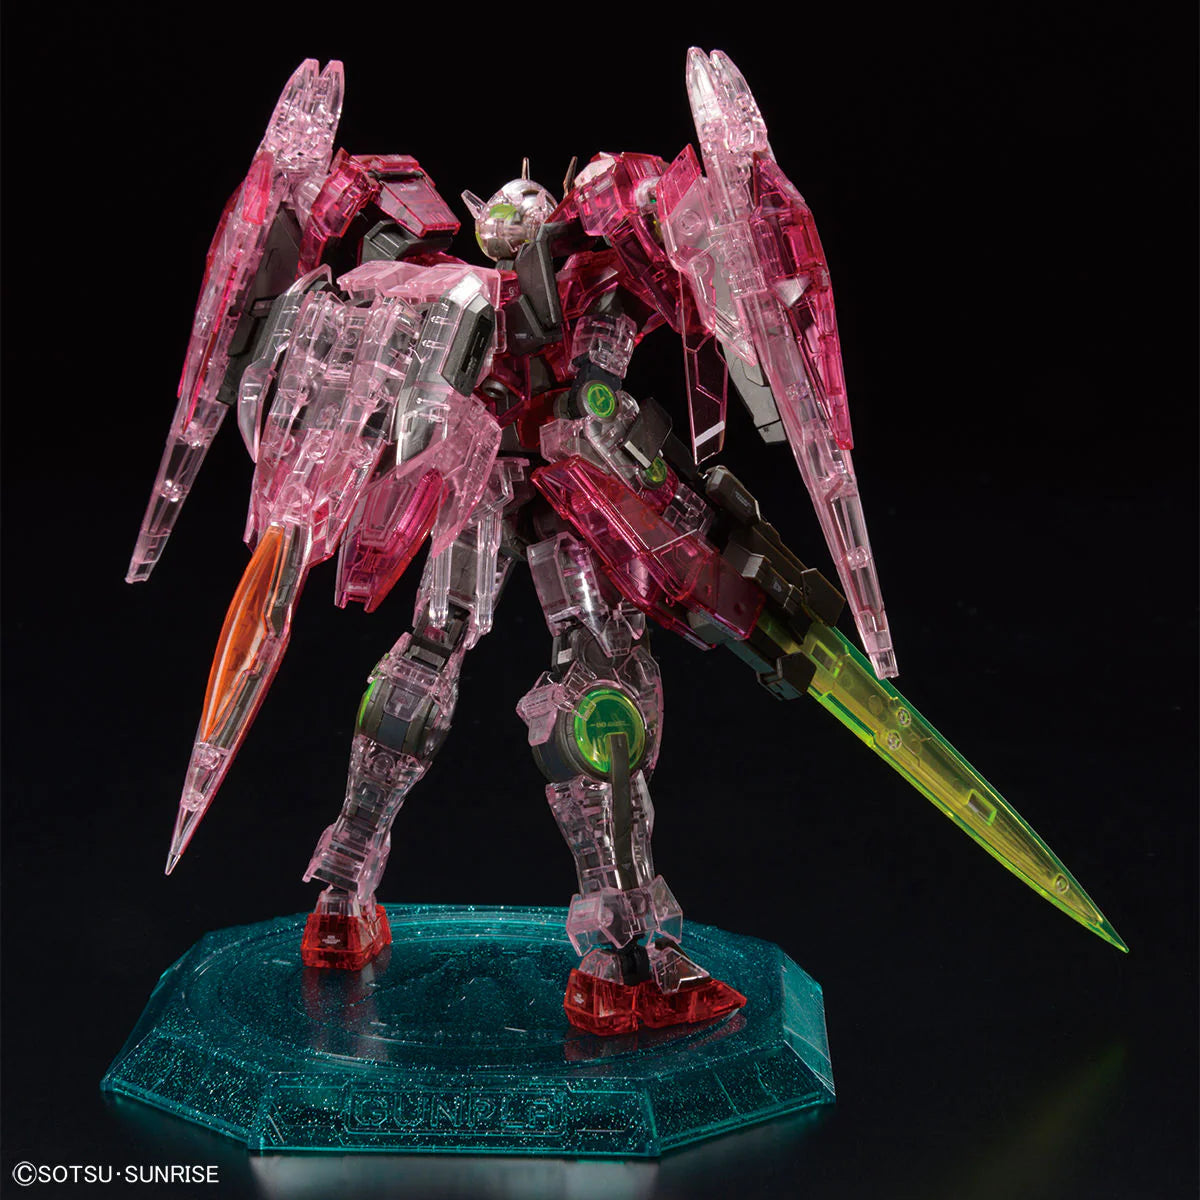 RG 1/144 - Gundam Base Limited - 00-raiser [Trans-Am Clear]